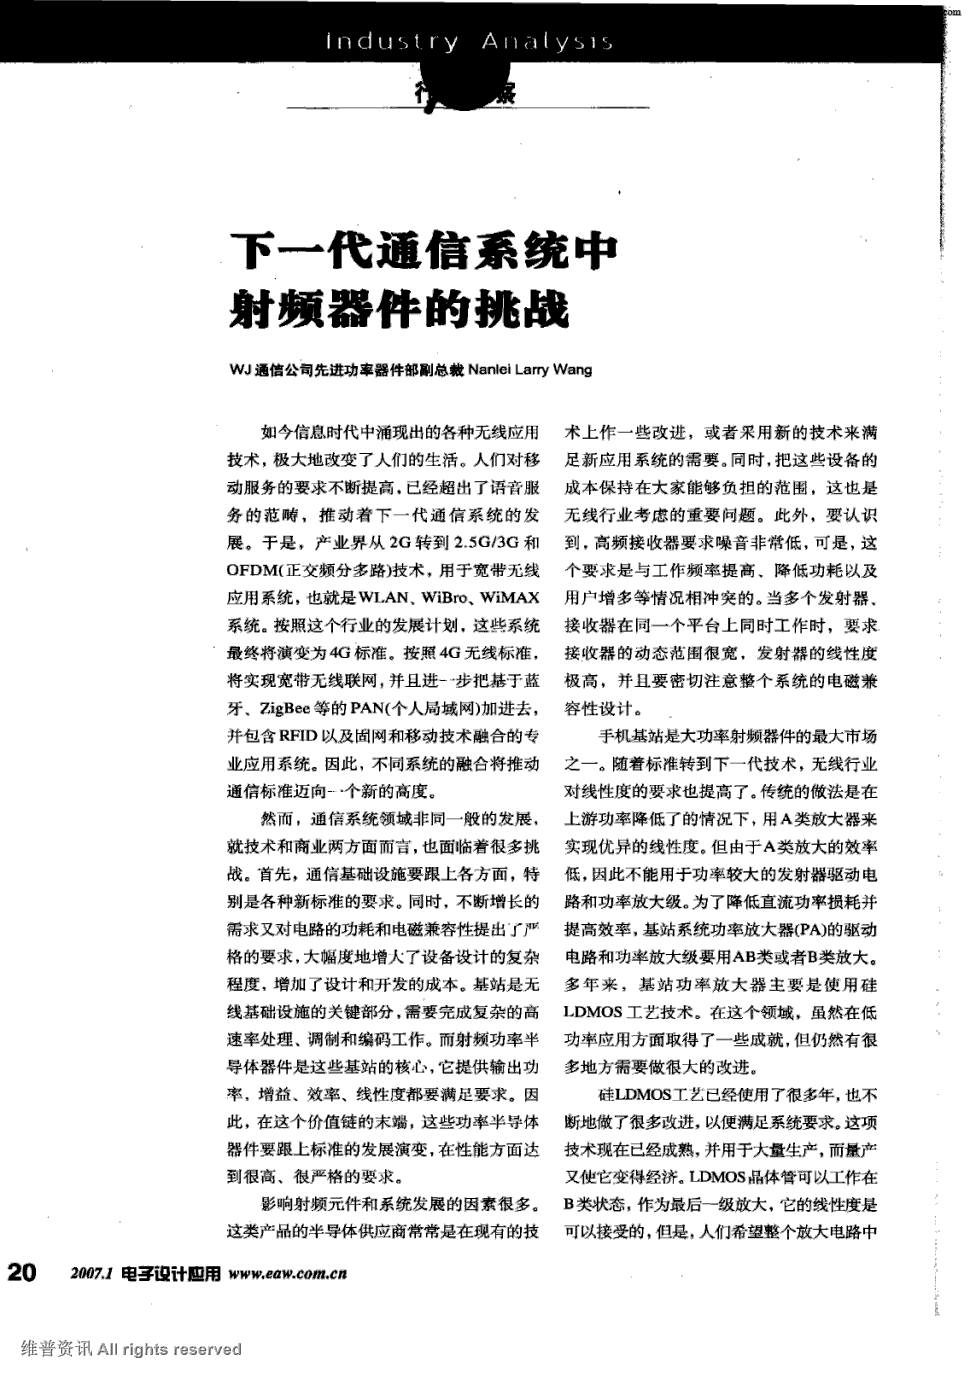 《电子设计应用》2007年第1期 20,22,24,共3页nanlei larry wang